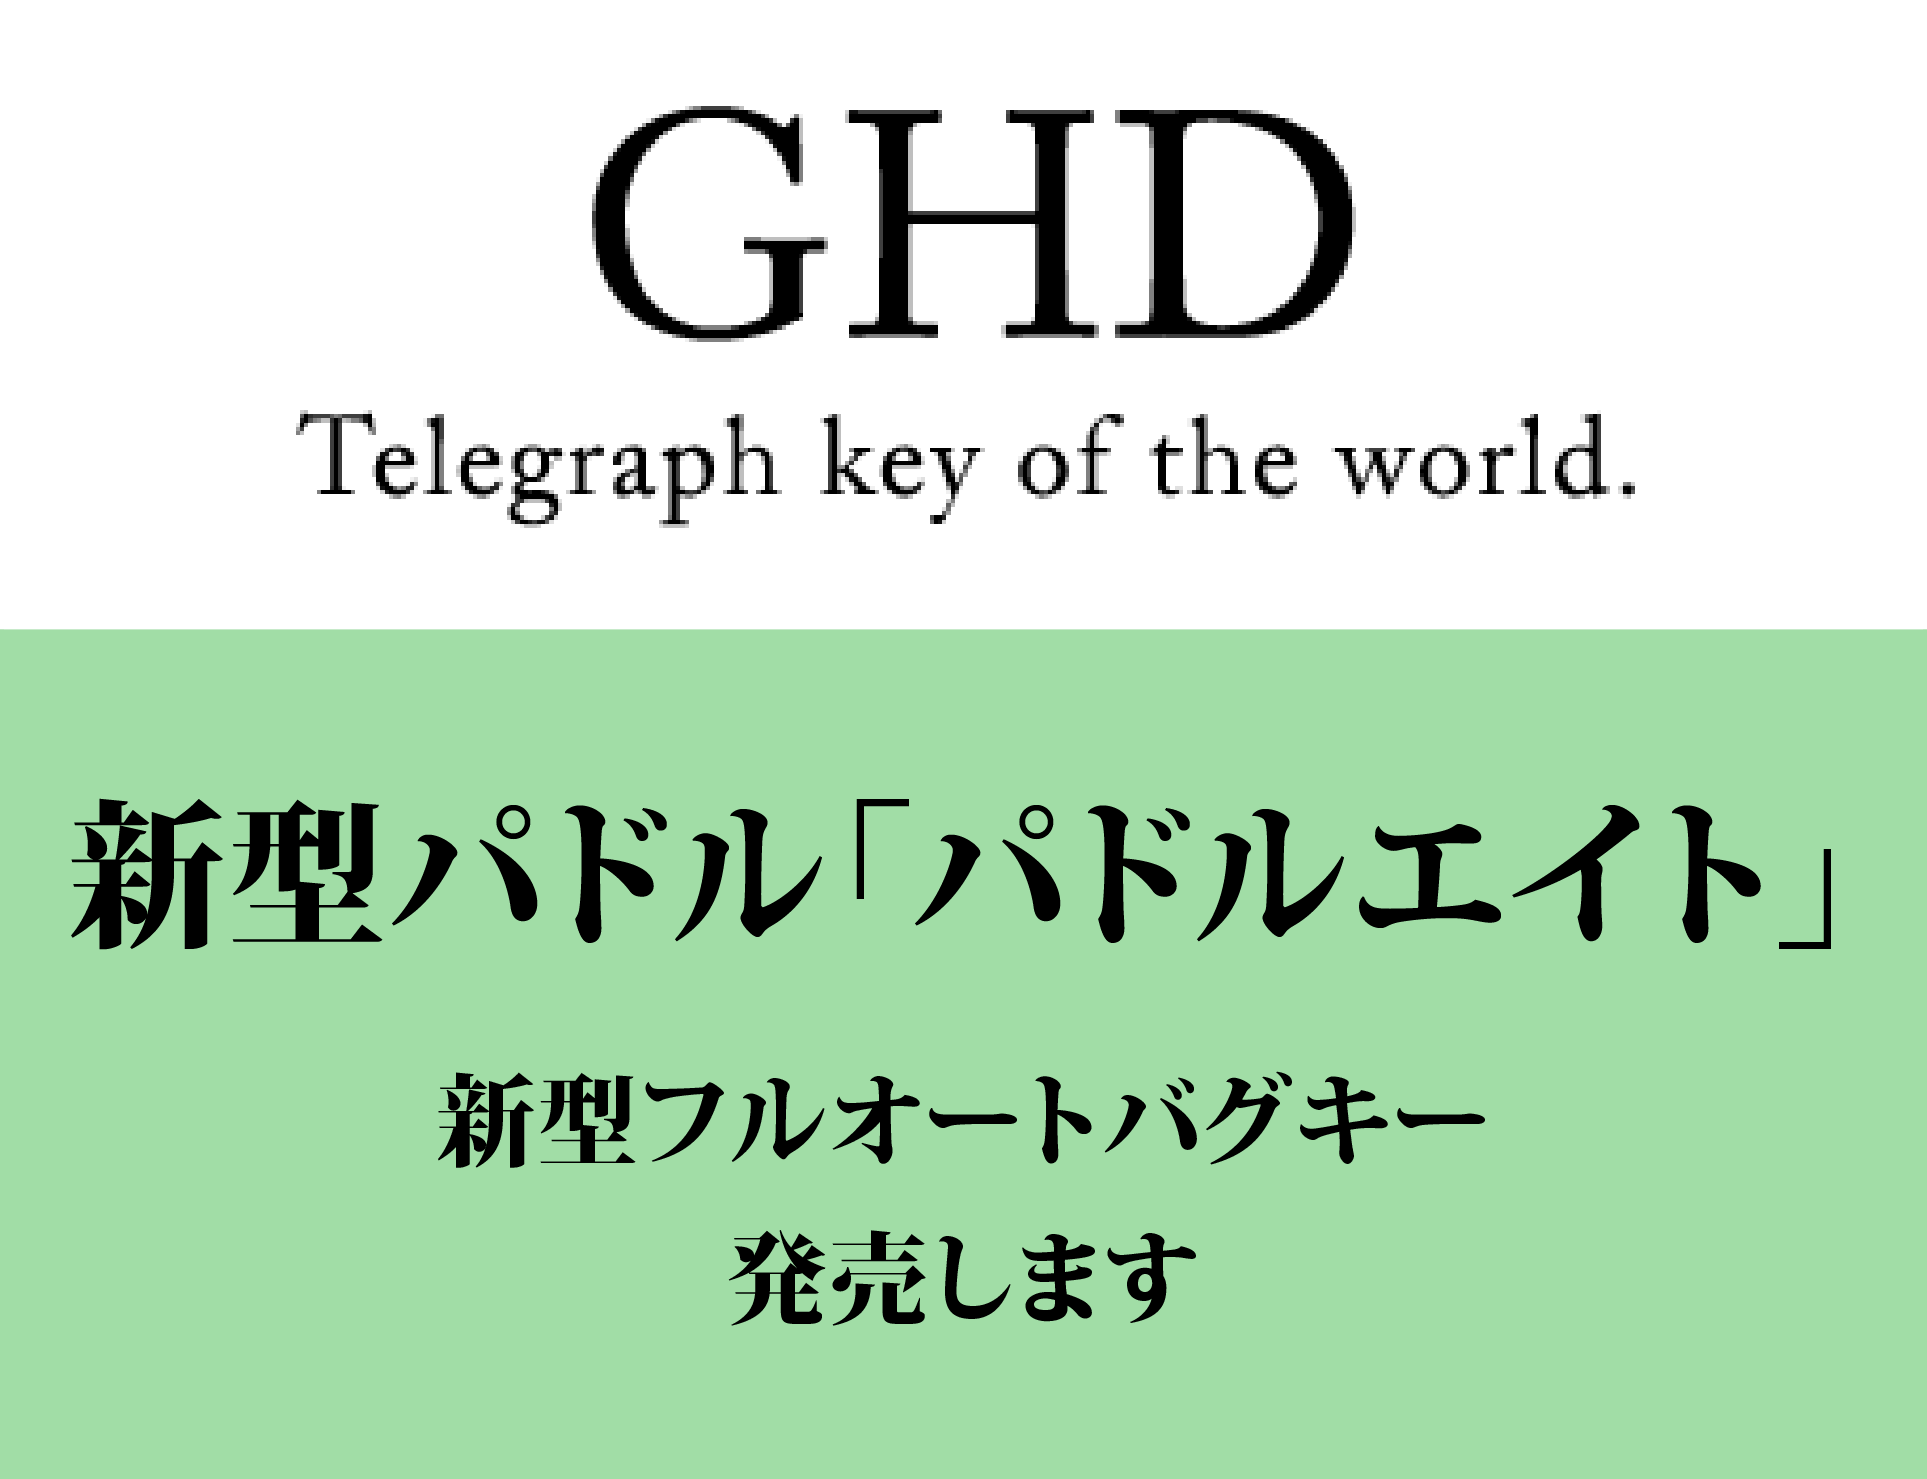 GHD Telegraph key of the world. モールス信号を通じて豊かなハムライフを提供しています。